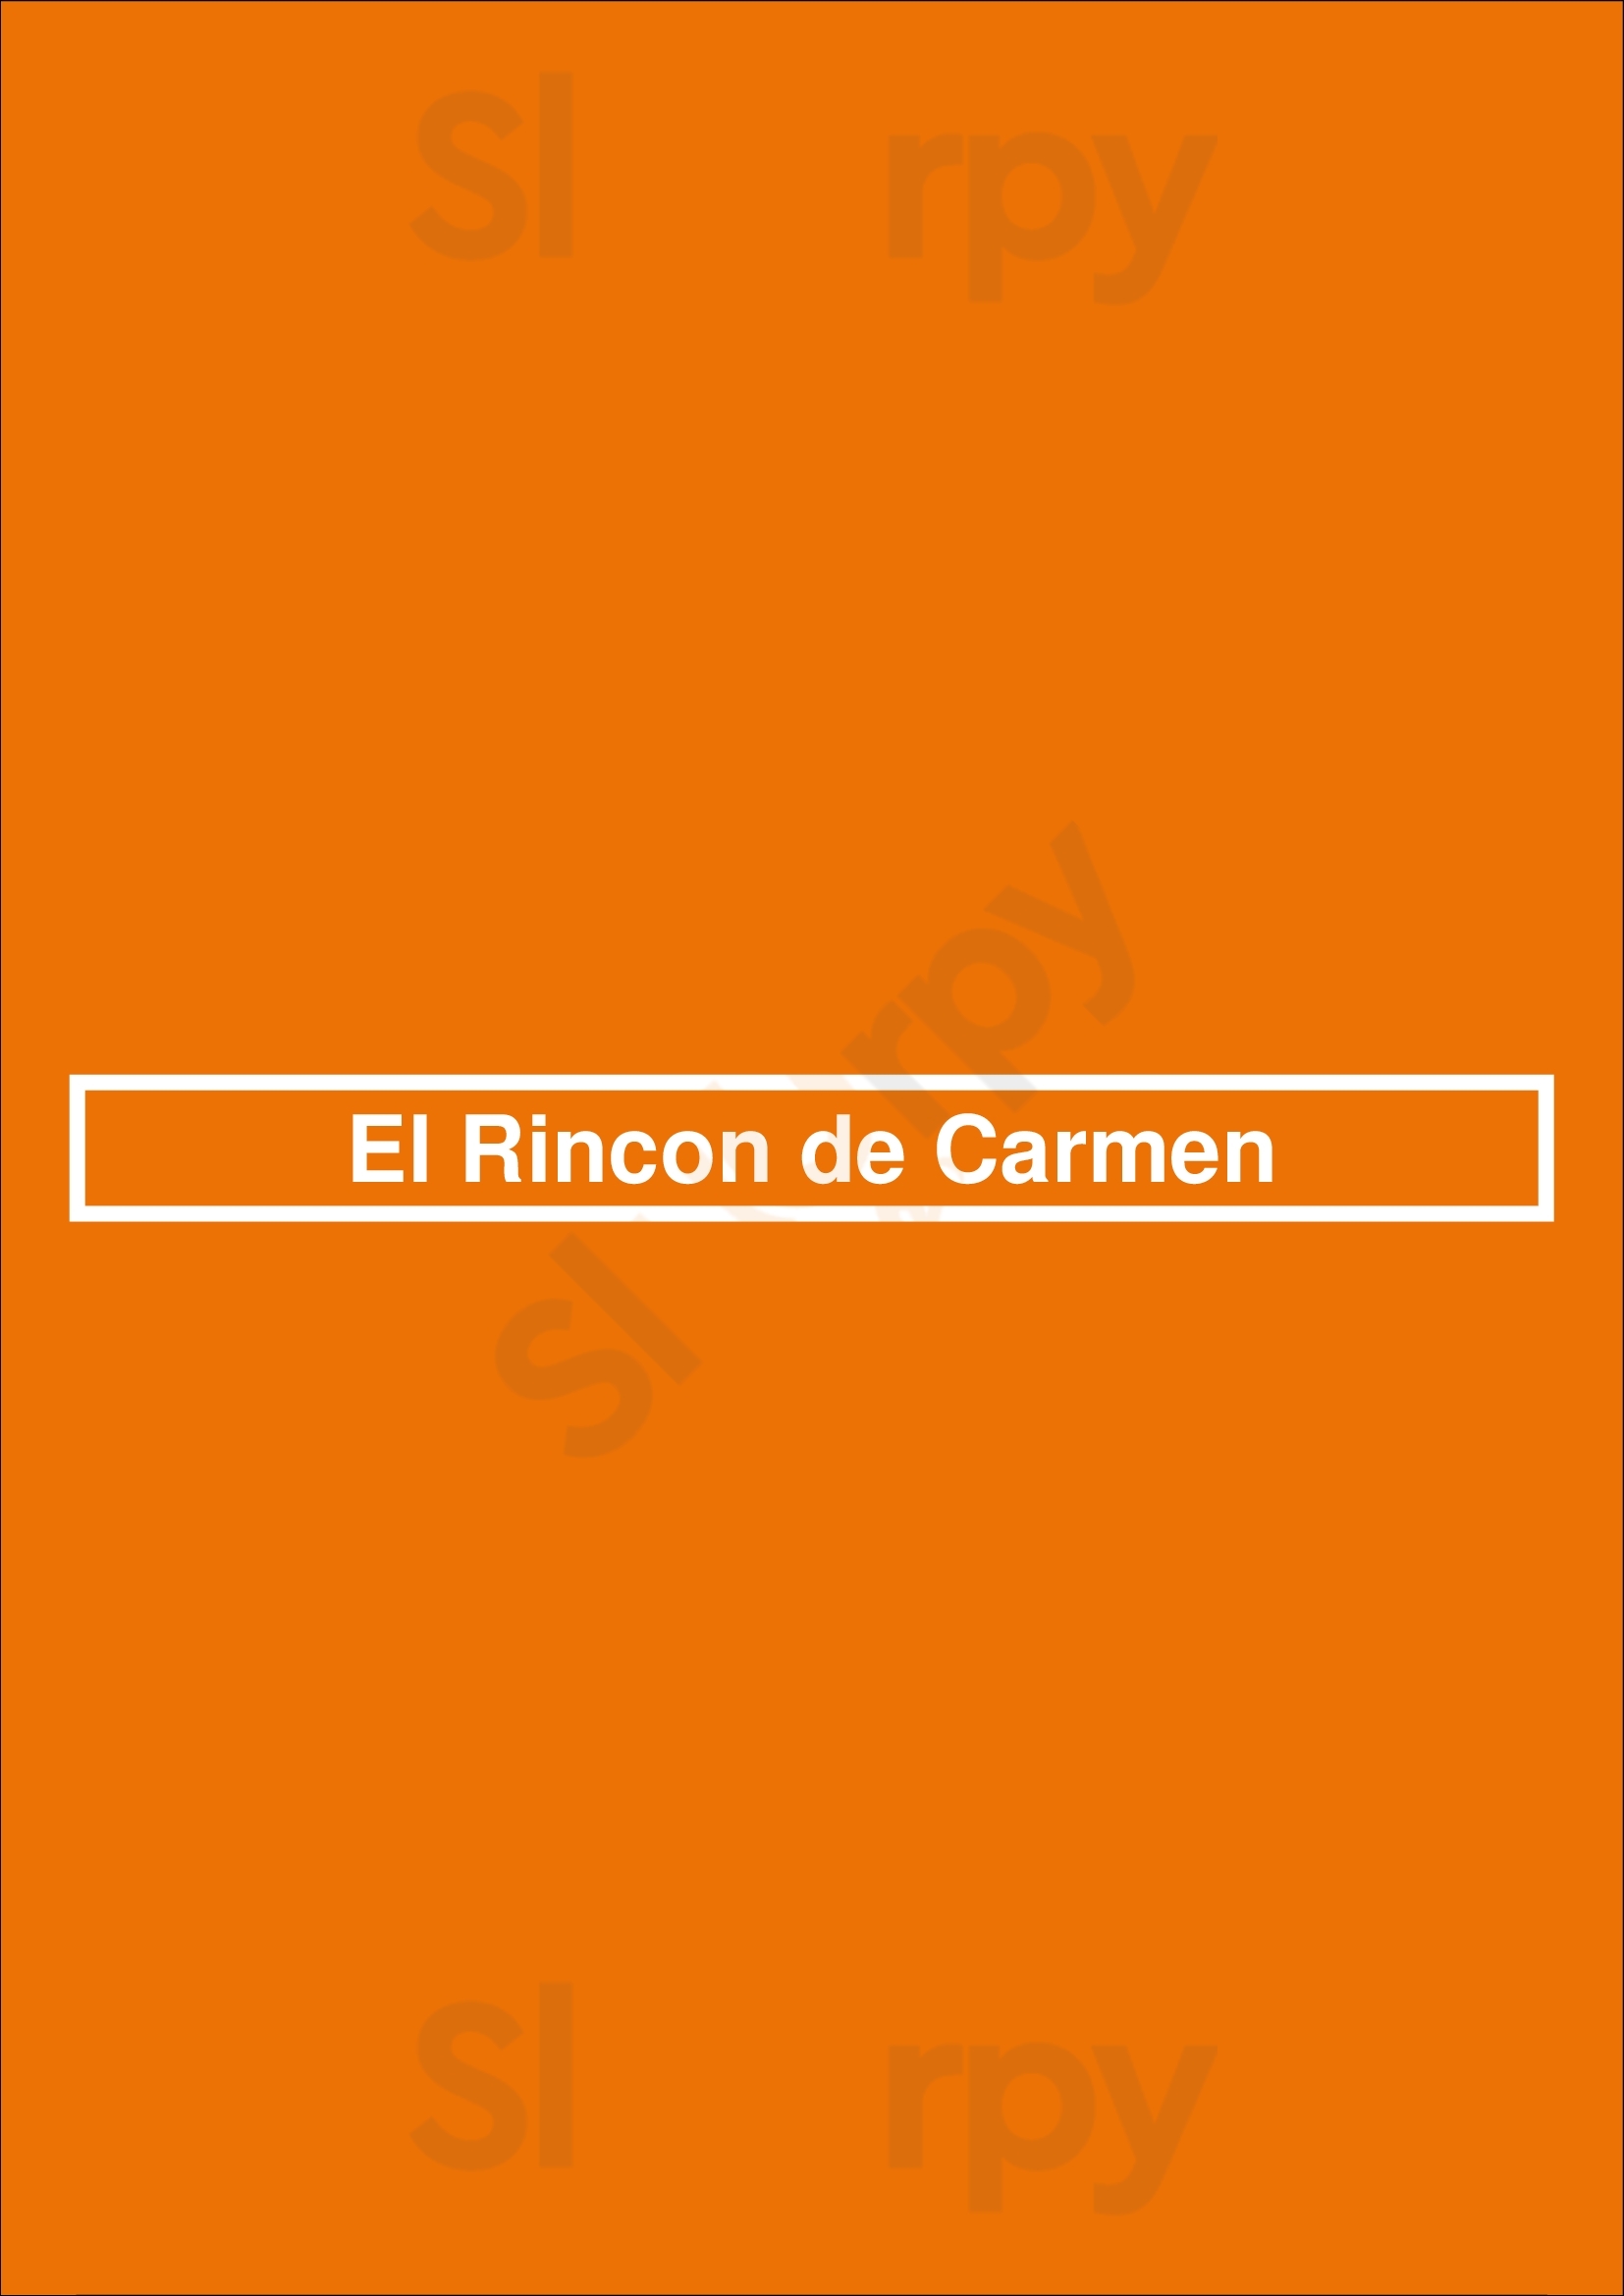 El Rincon De Carmen Córdoba Menu - 1